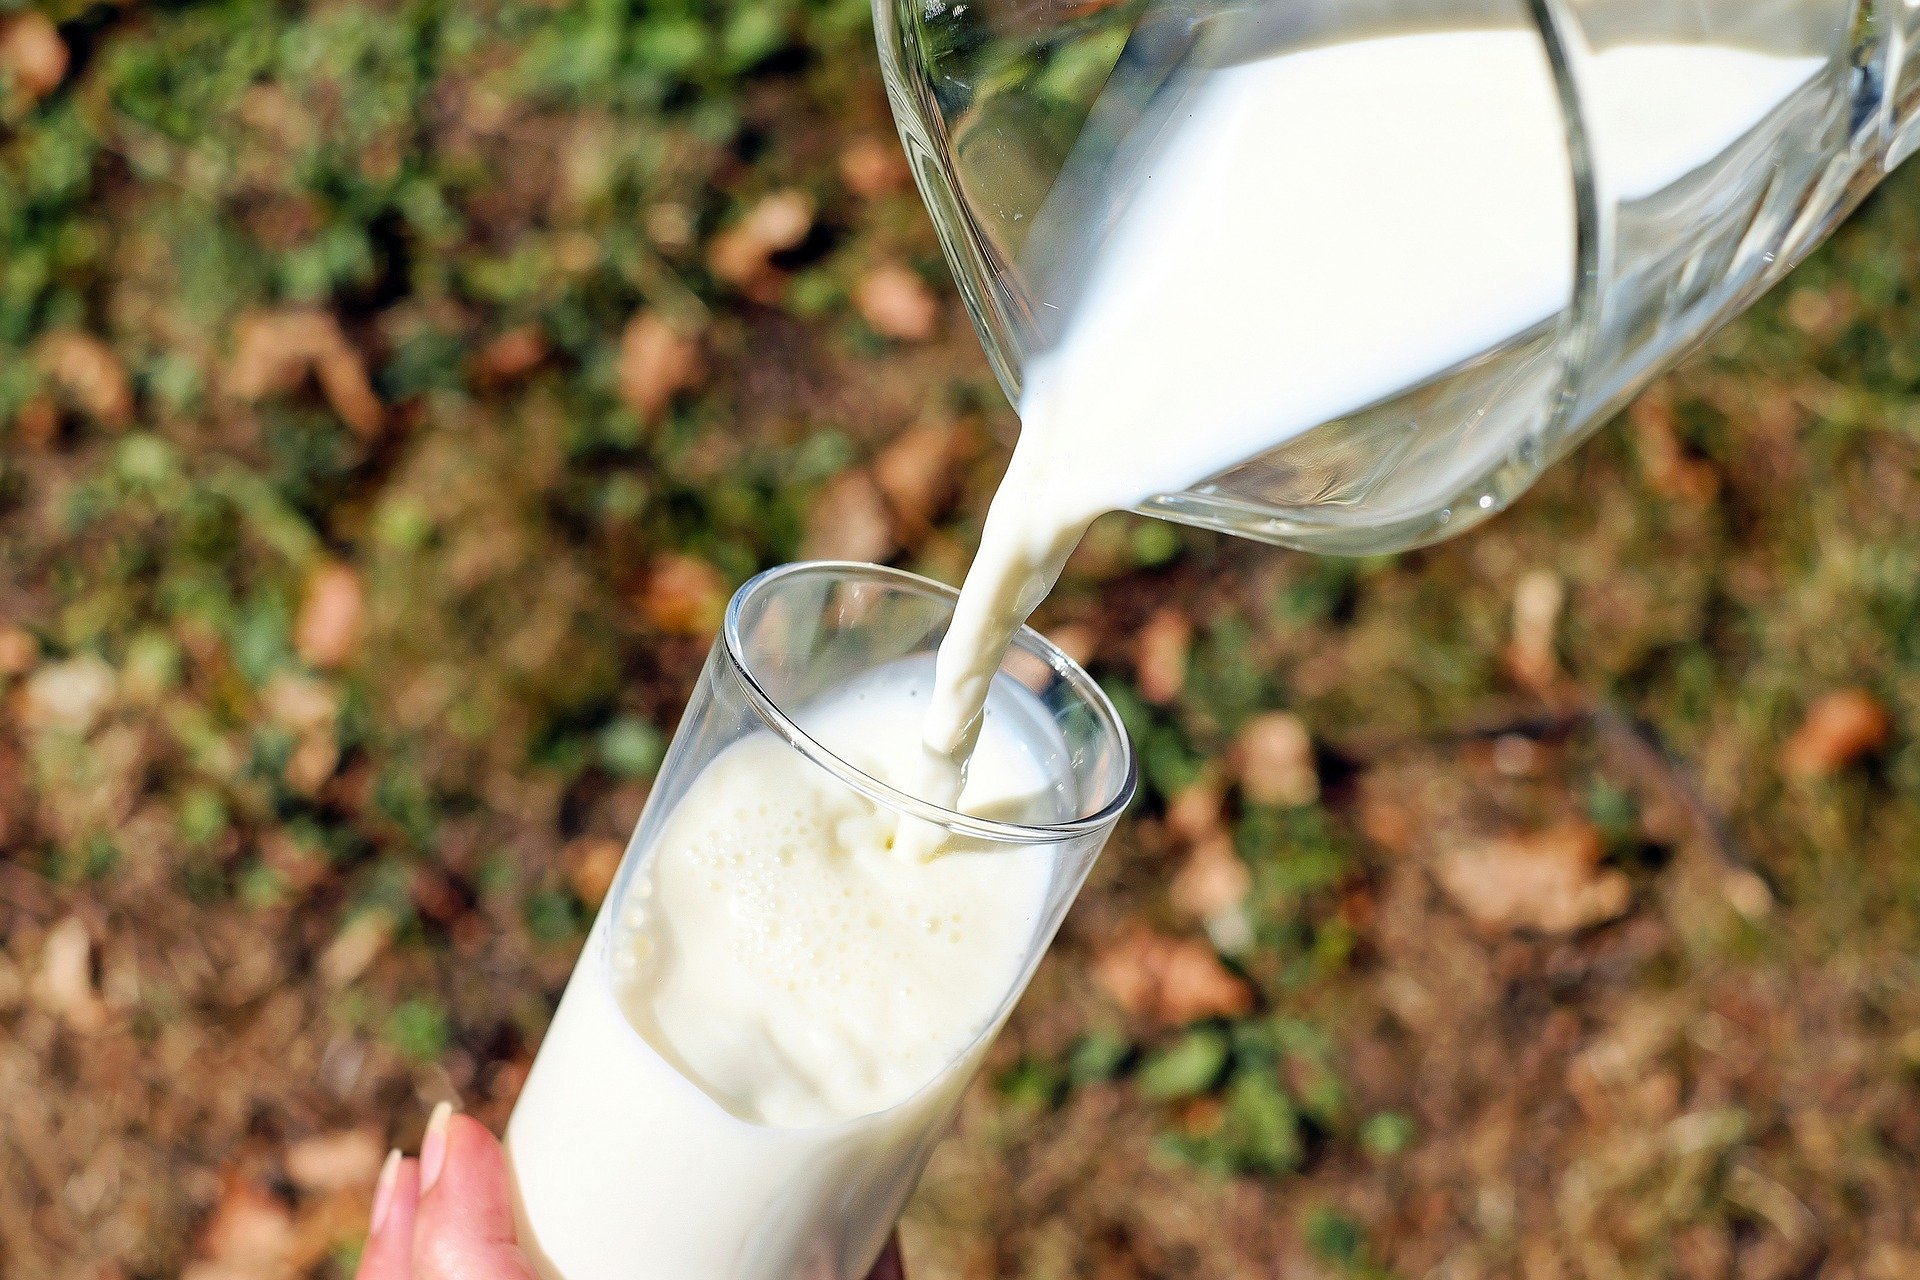 Susu full cream dapat turunkan risiko obesitas pada anak-anak